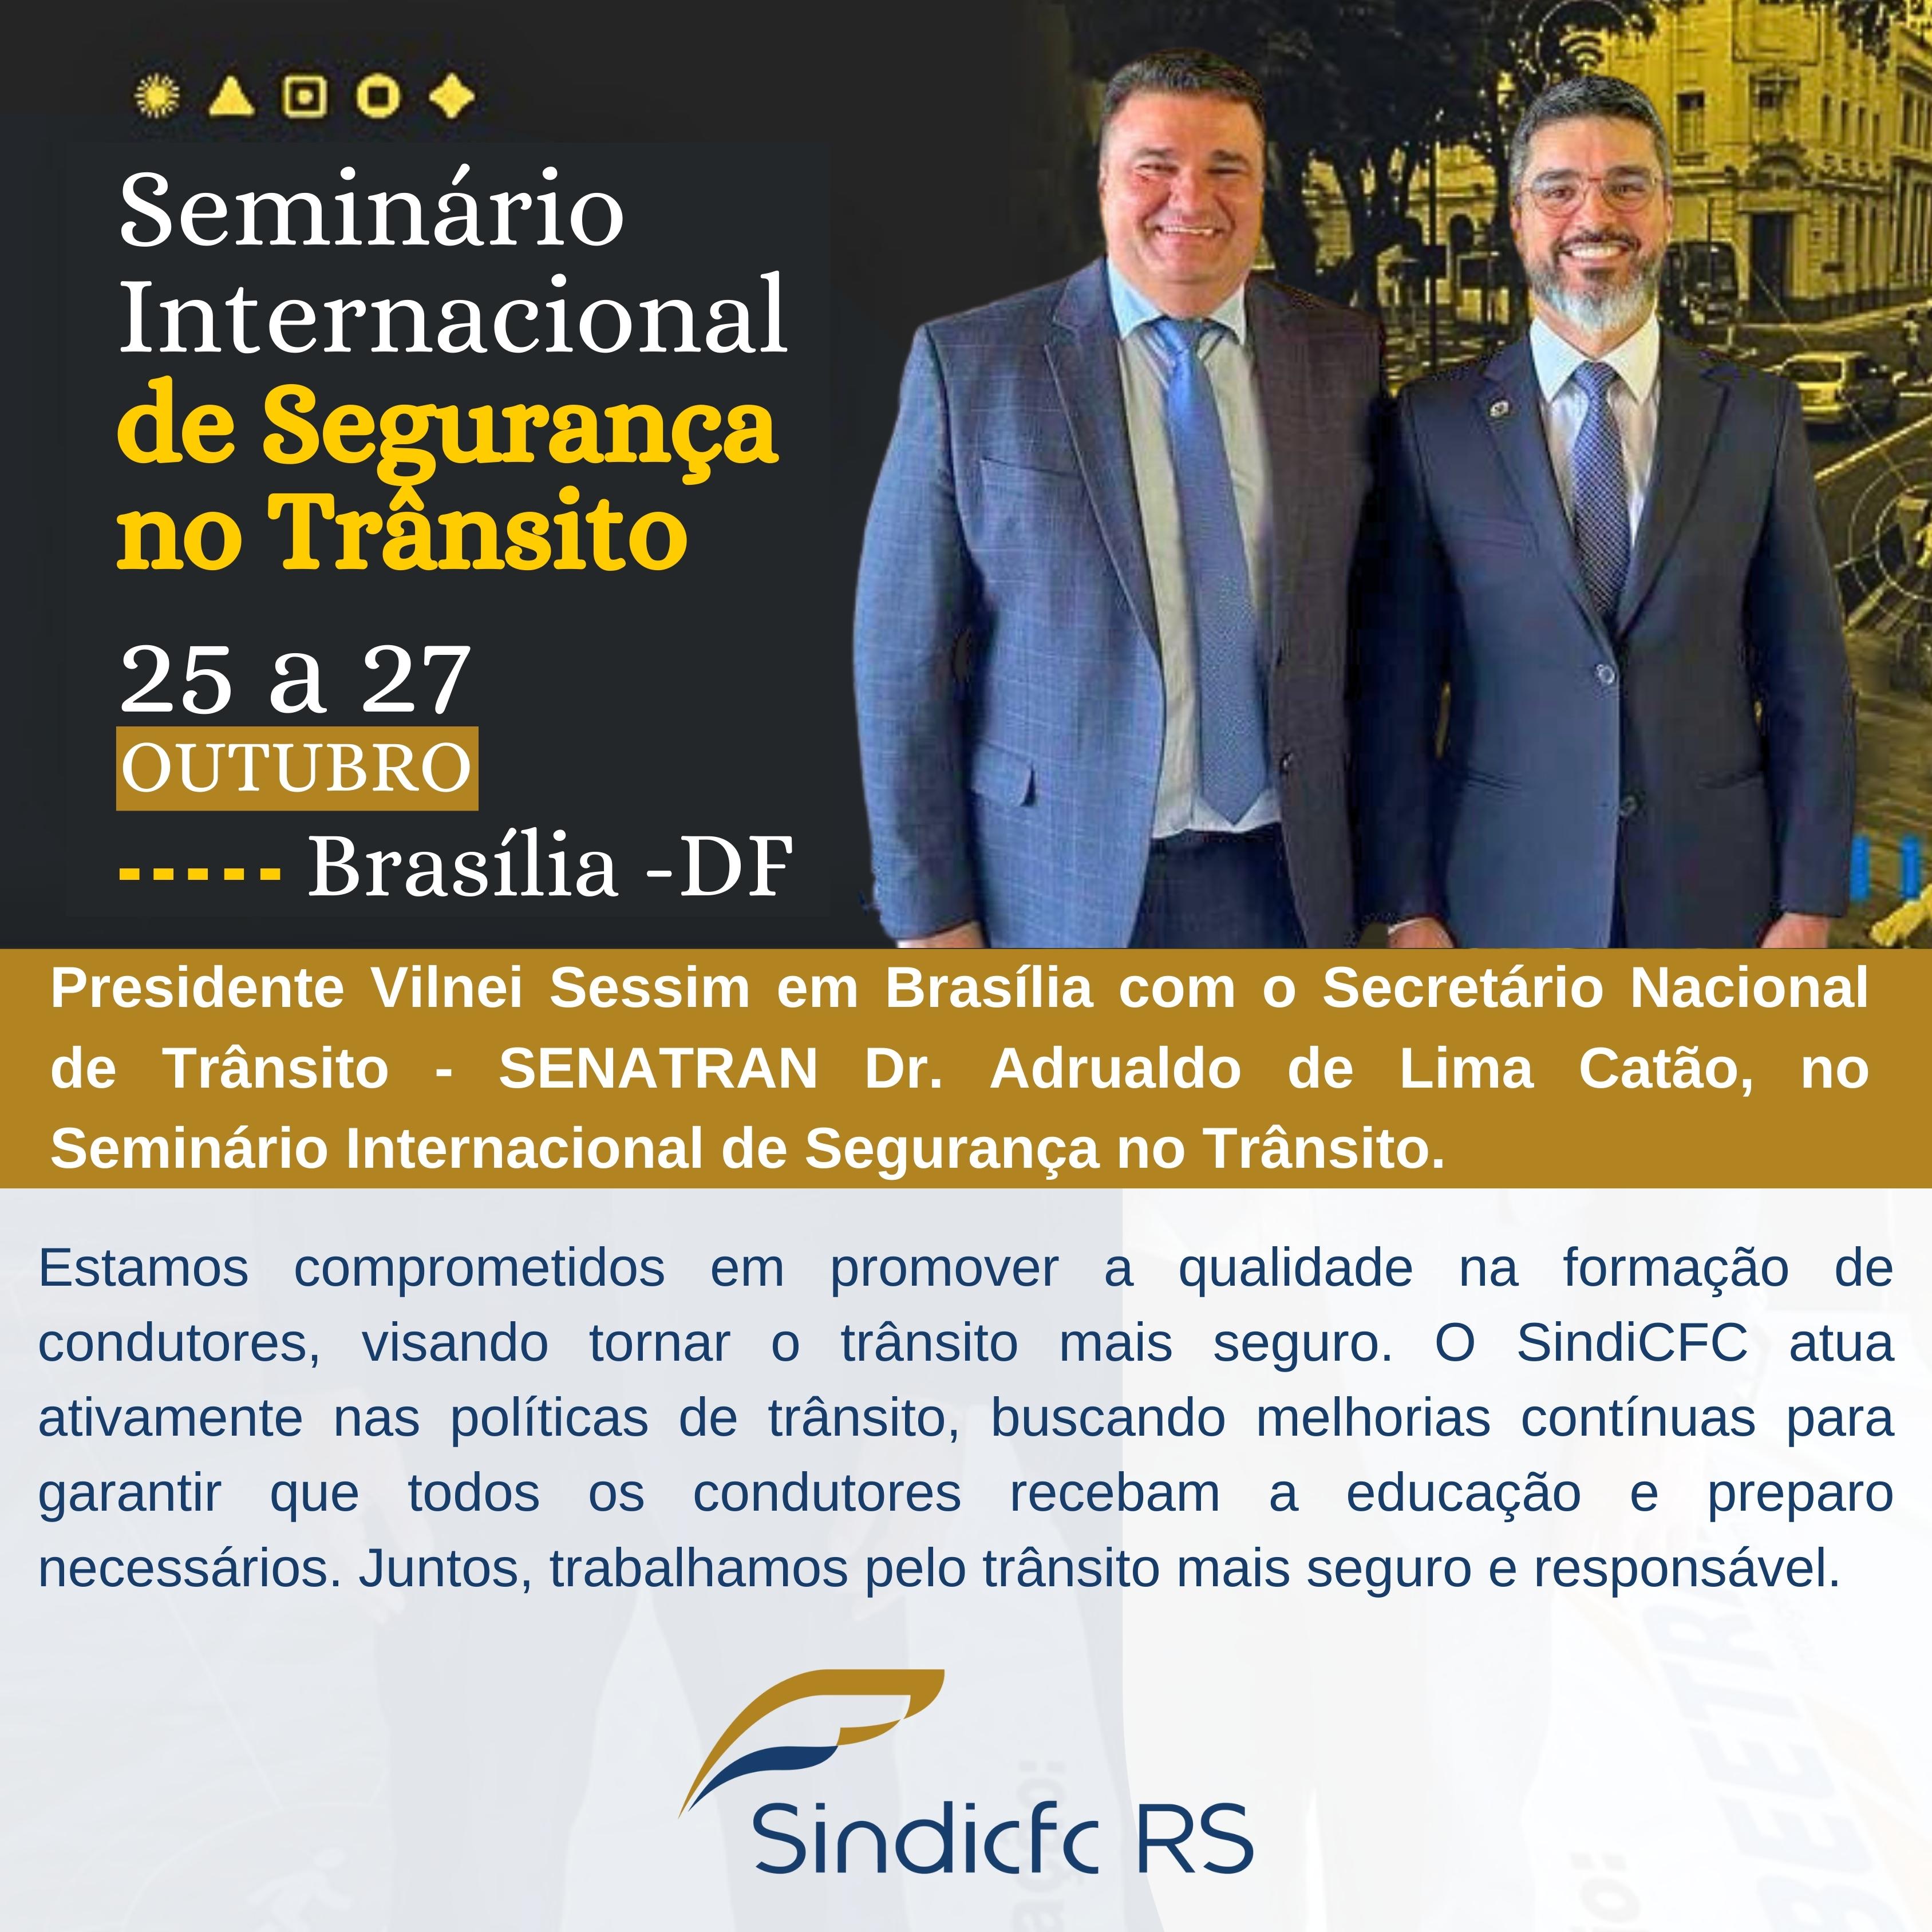 Presidente Vilnei Sessim em Brasília com o Secretário Nacional de Trânsito – SENATRAN Dr. Adrualdo de Lima Catão, no Seminário Internacional de Segurança no Trânsito.